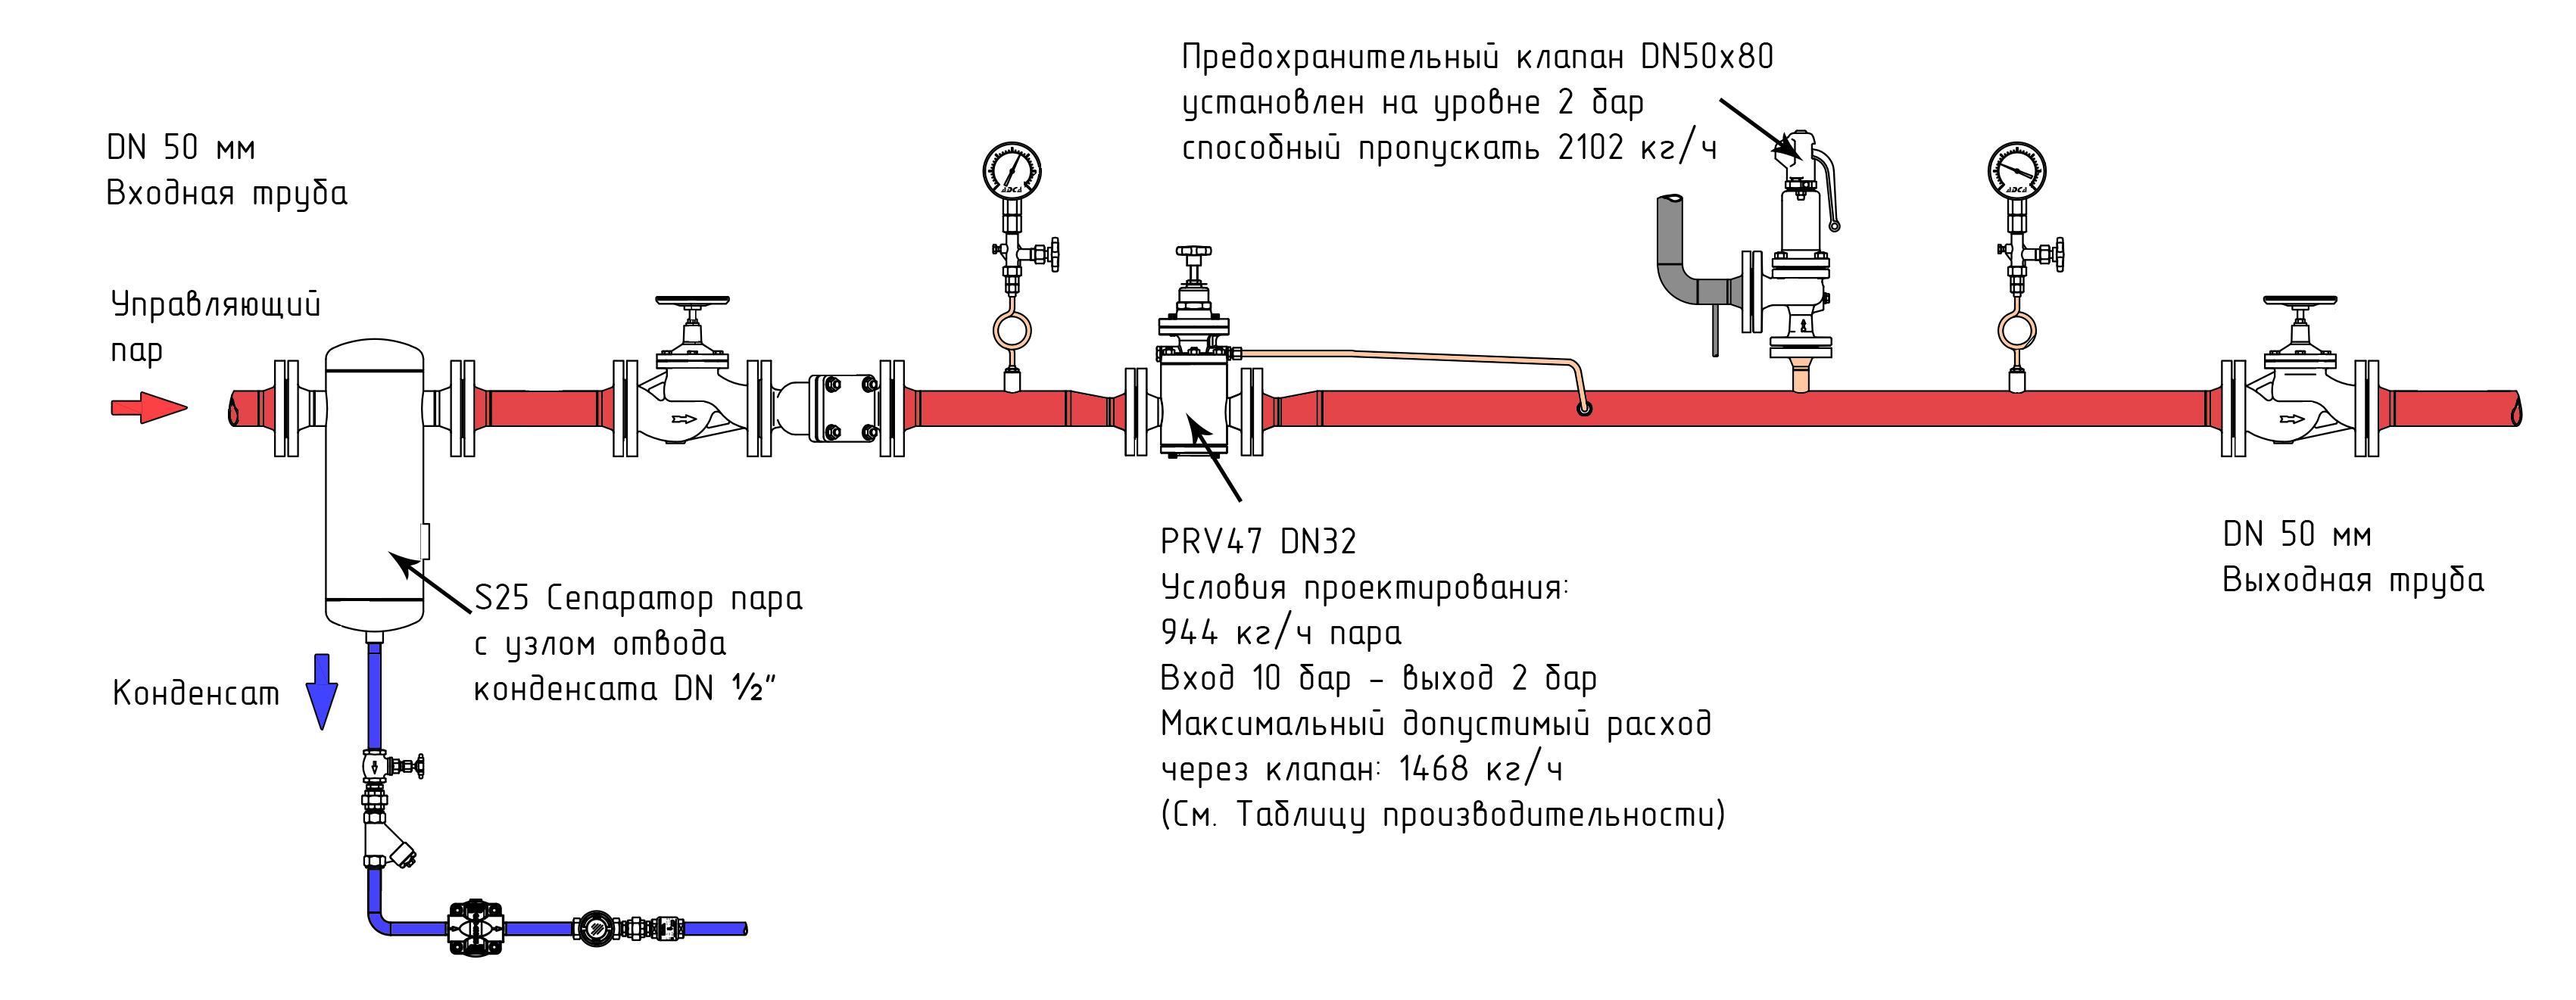 Предохранительный клапан в системе отопления: как подобрать, настроить и использовать